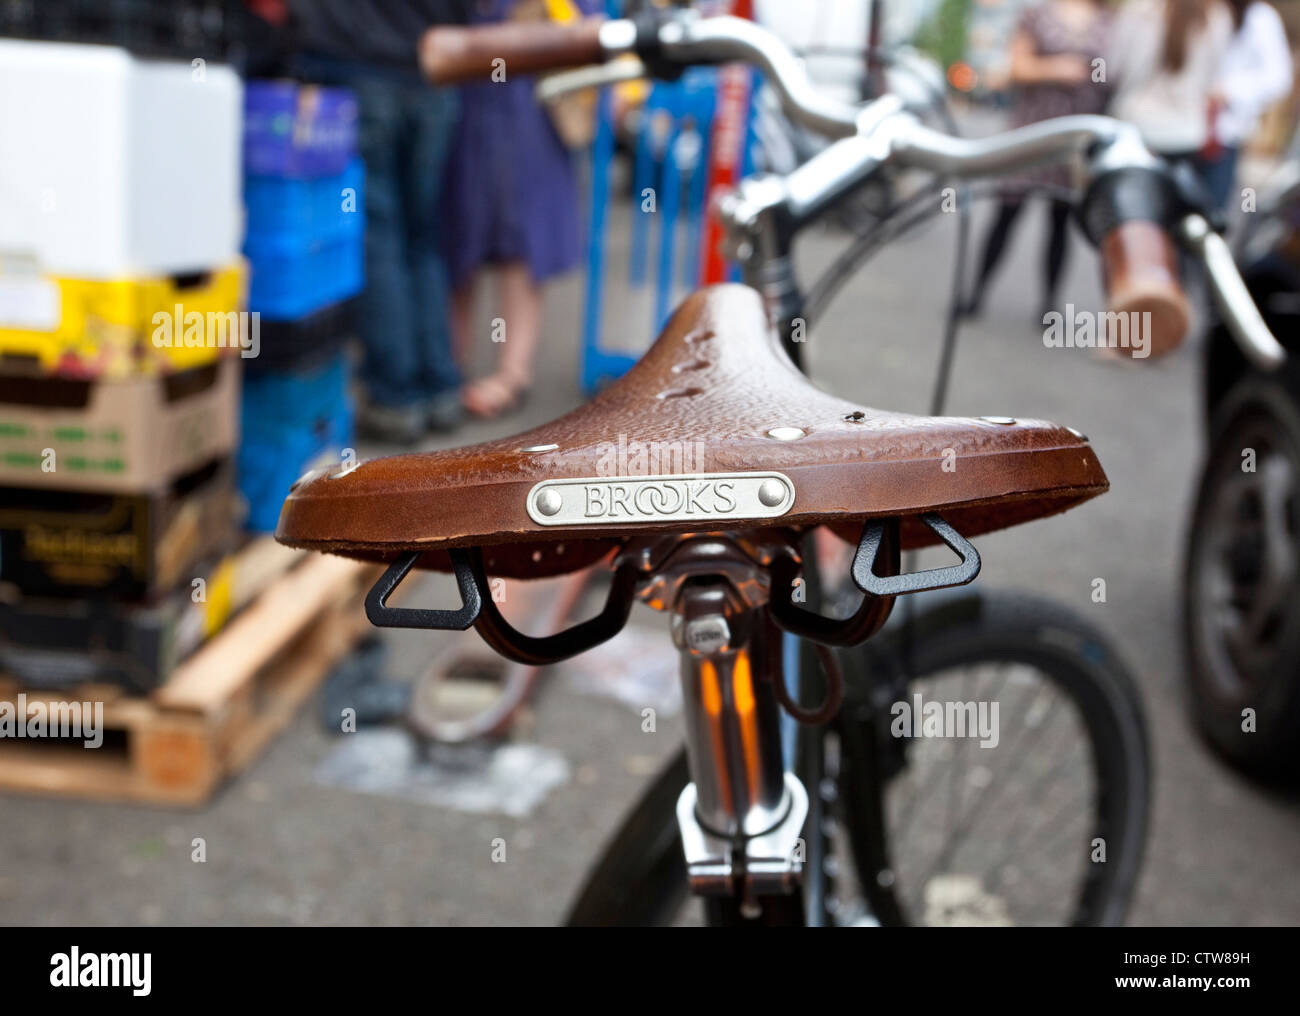 Brooks bicycle saddle, London, England, UK Stock Photo